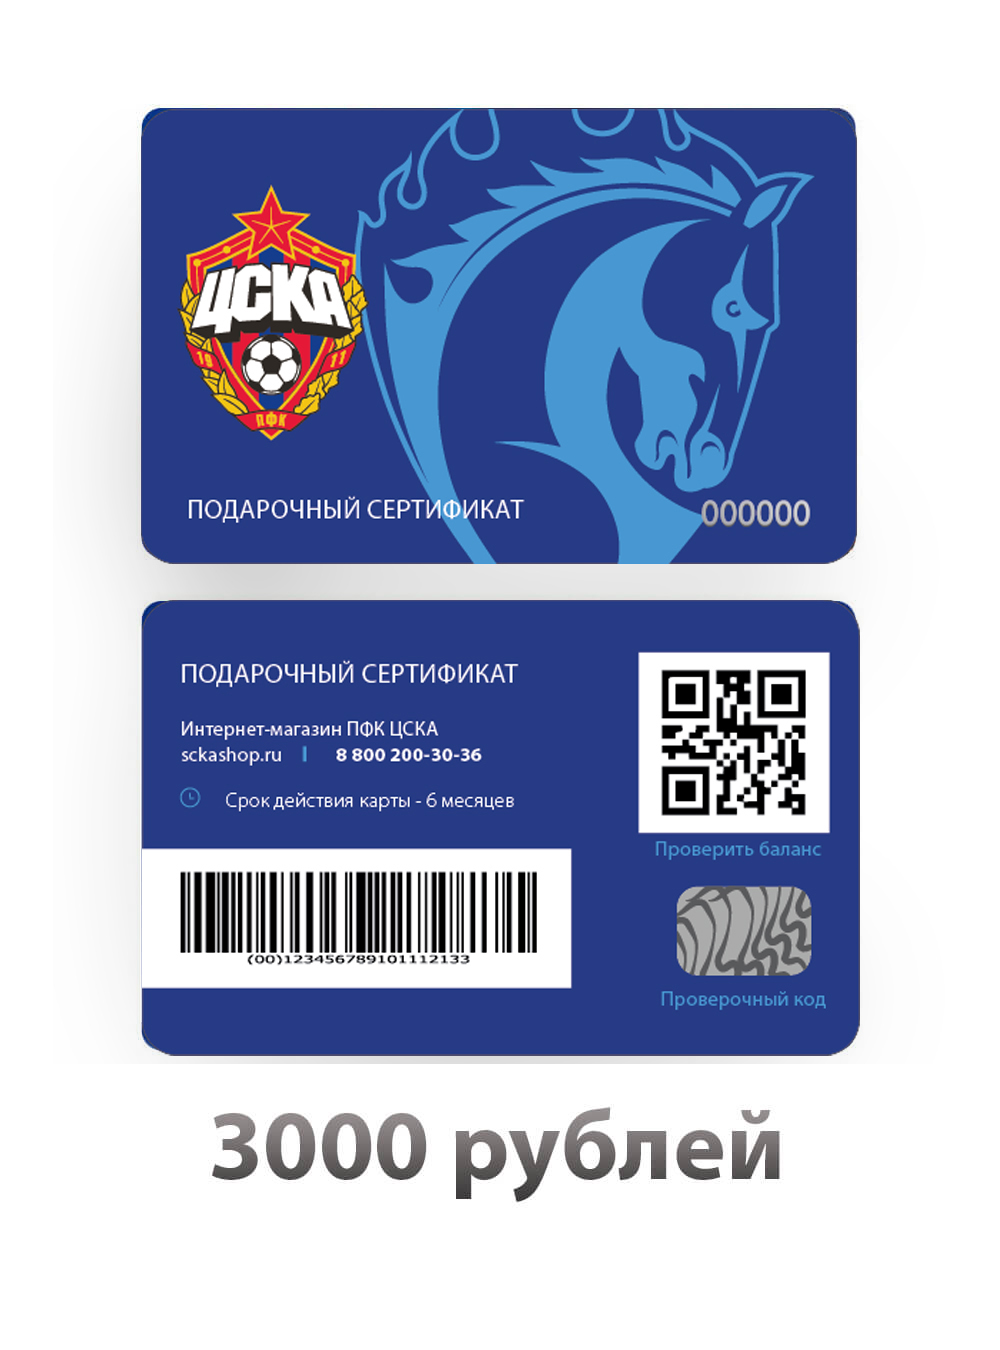 Подарочный сертификат на 3000 рублей (Подарочная карта на 3000 рублей) от Cskashop